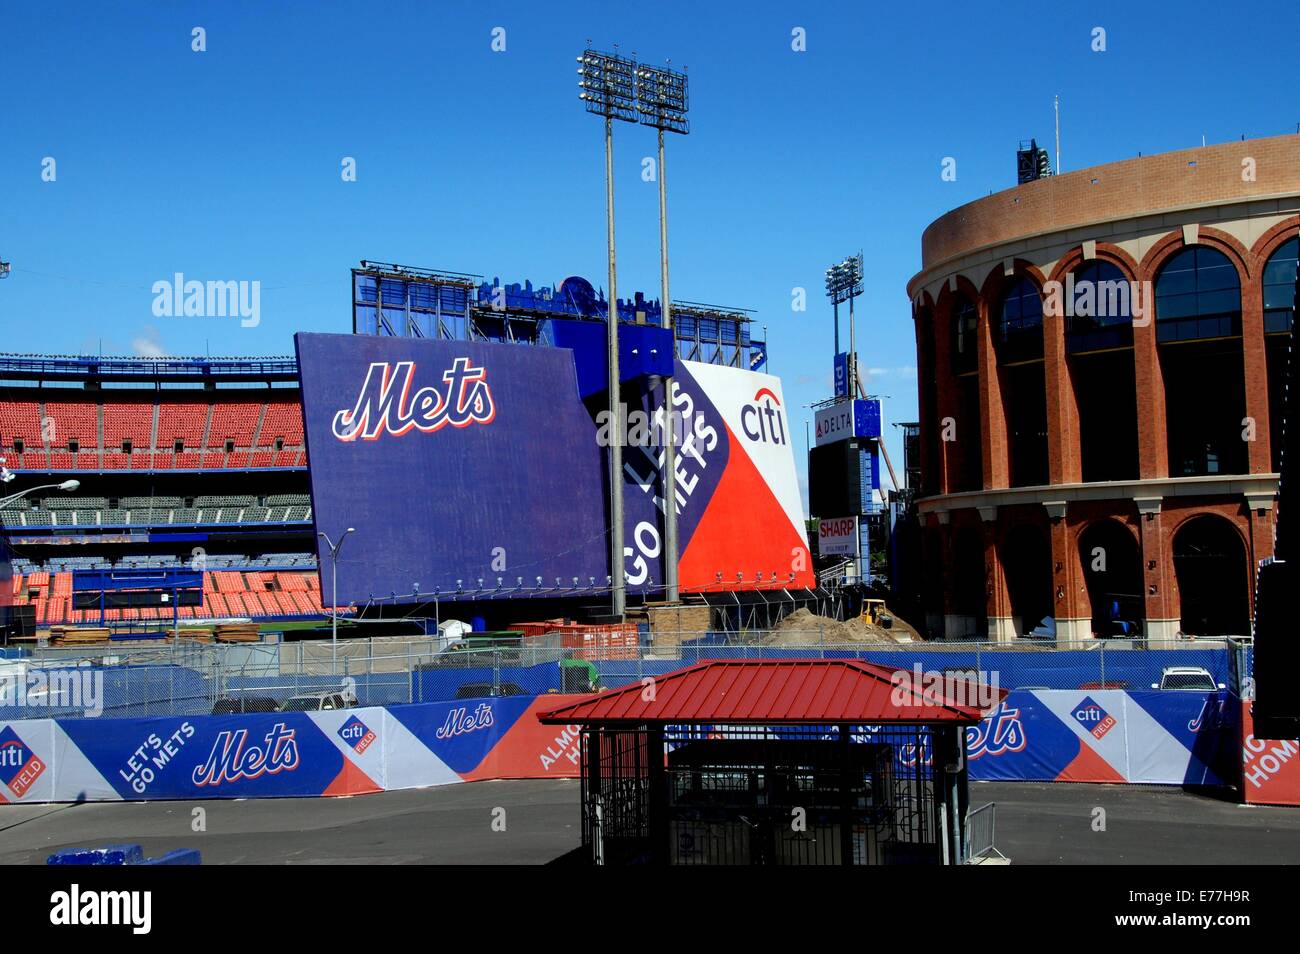 QUEENS, NEW YORK : deux stades Shea, accueil de l'équipe de baseball des Mets de New York - l'ancien à gauche et le nouveau stade Citifield Banque D'Images